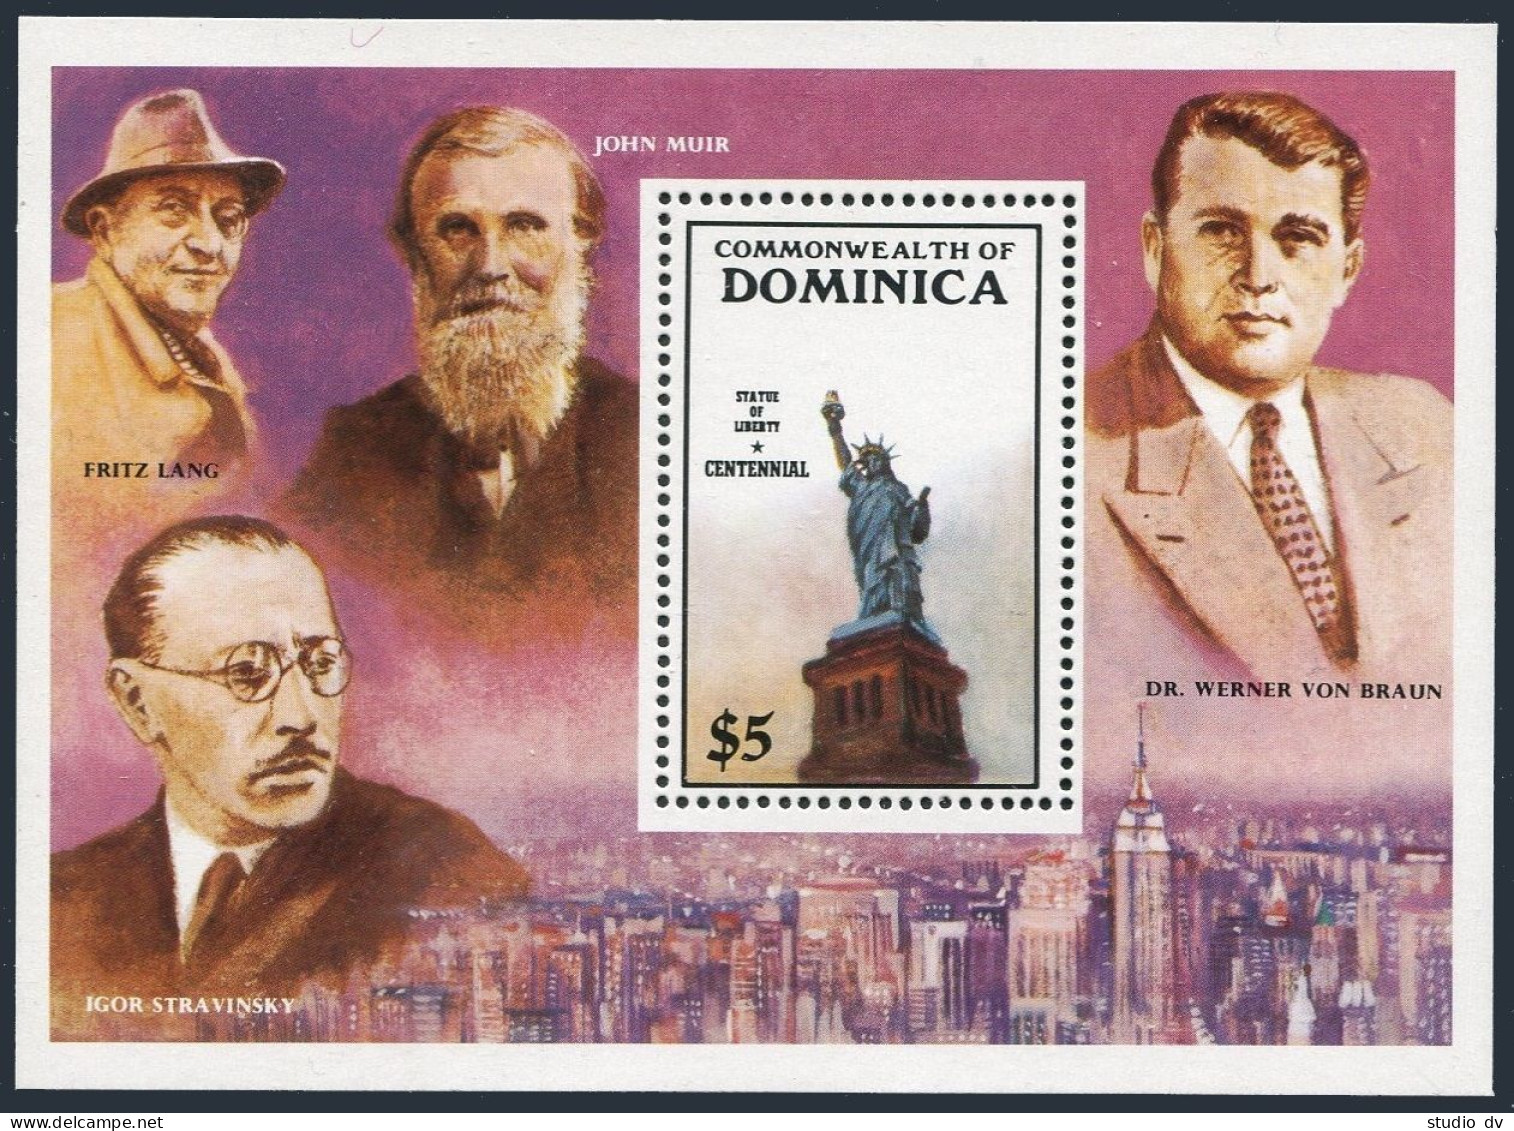 Dominica 940-943, 944, MNH. Michel 954-957, Bl.107. Statue Of Liberty-100, 1985. - Dominique (1978-...)